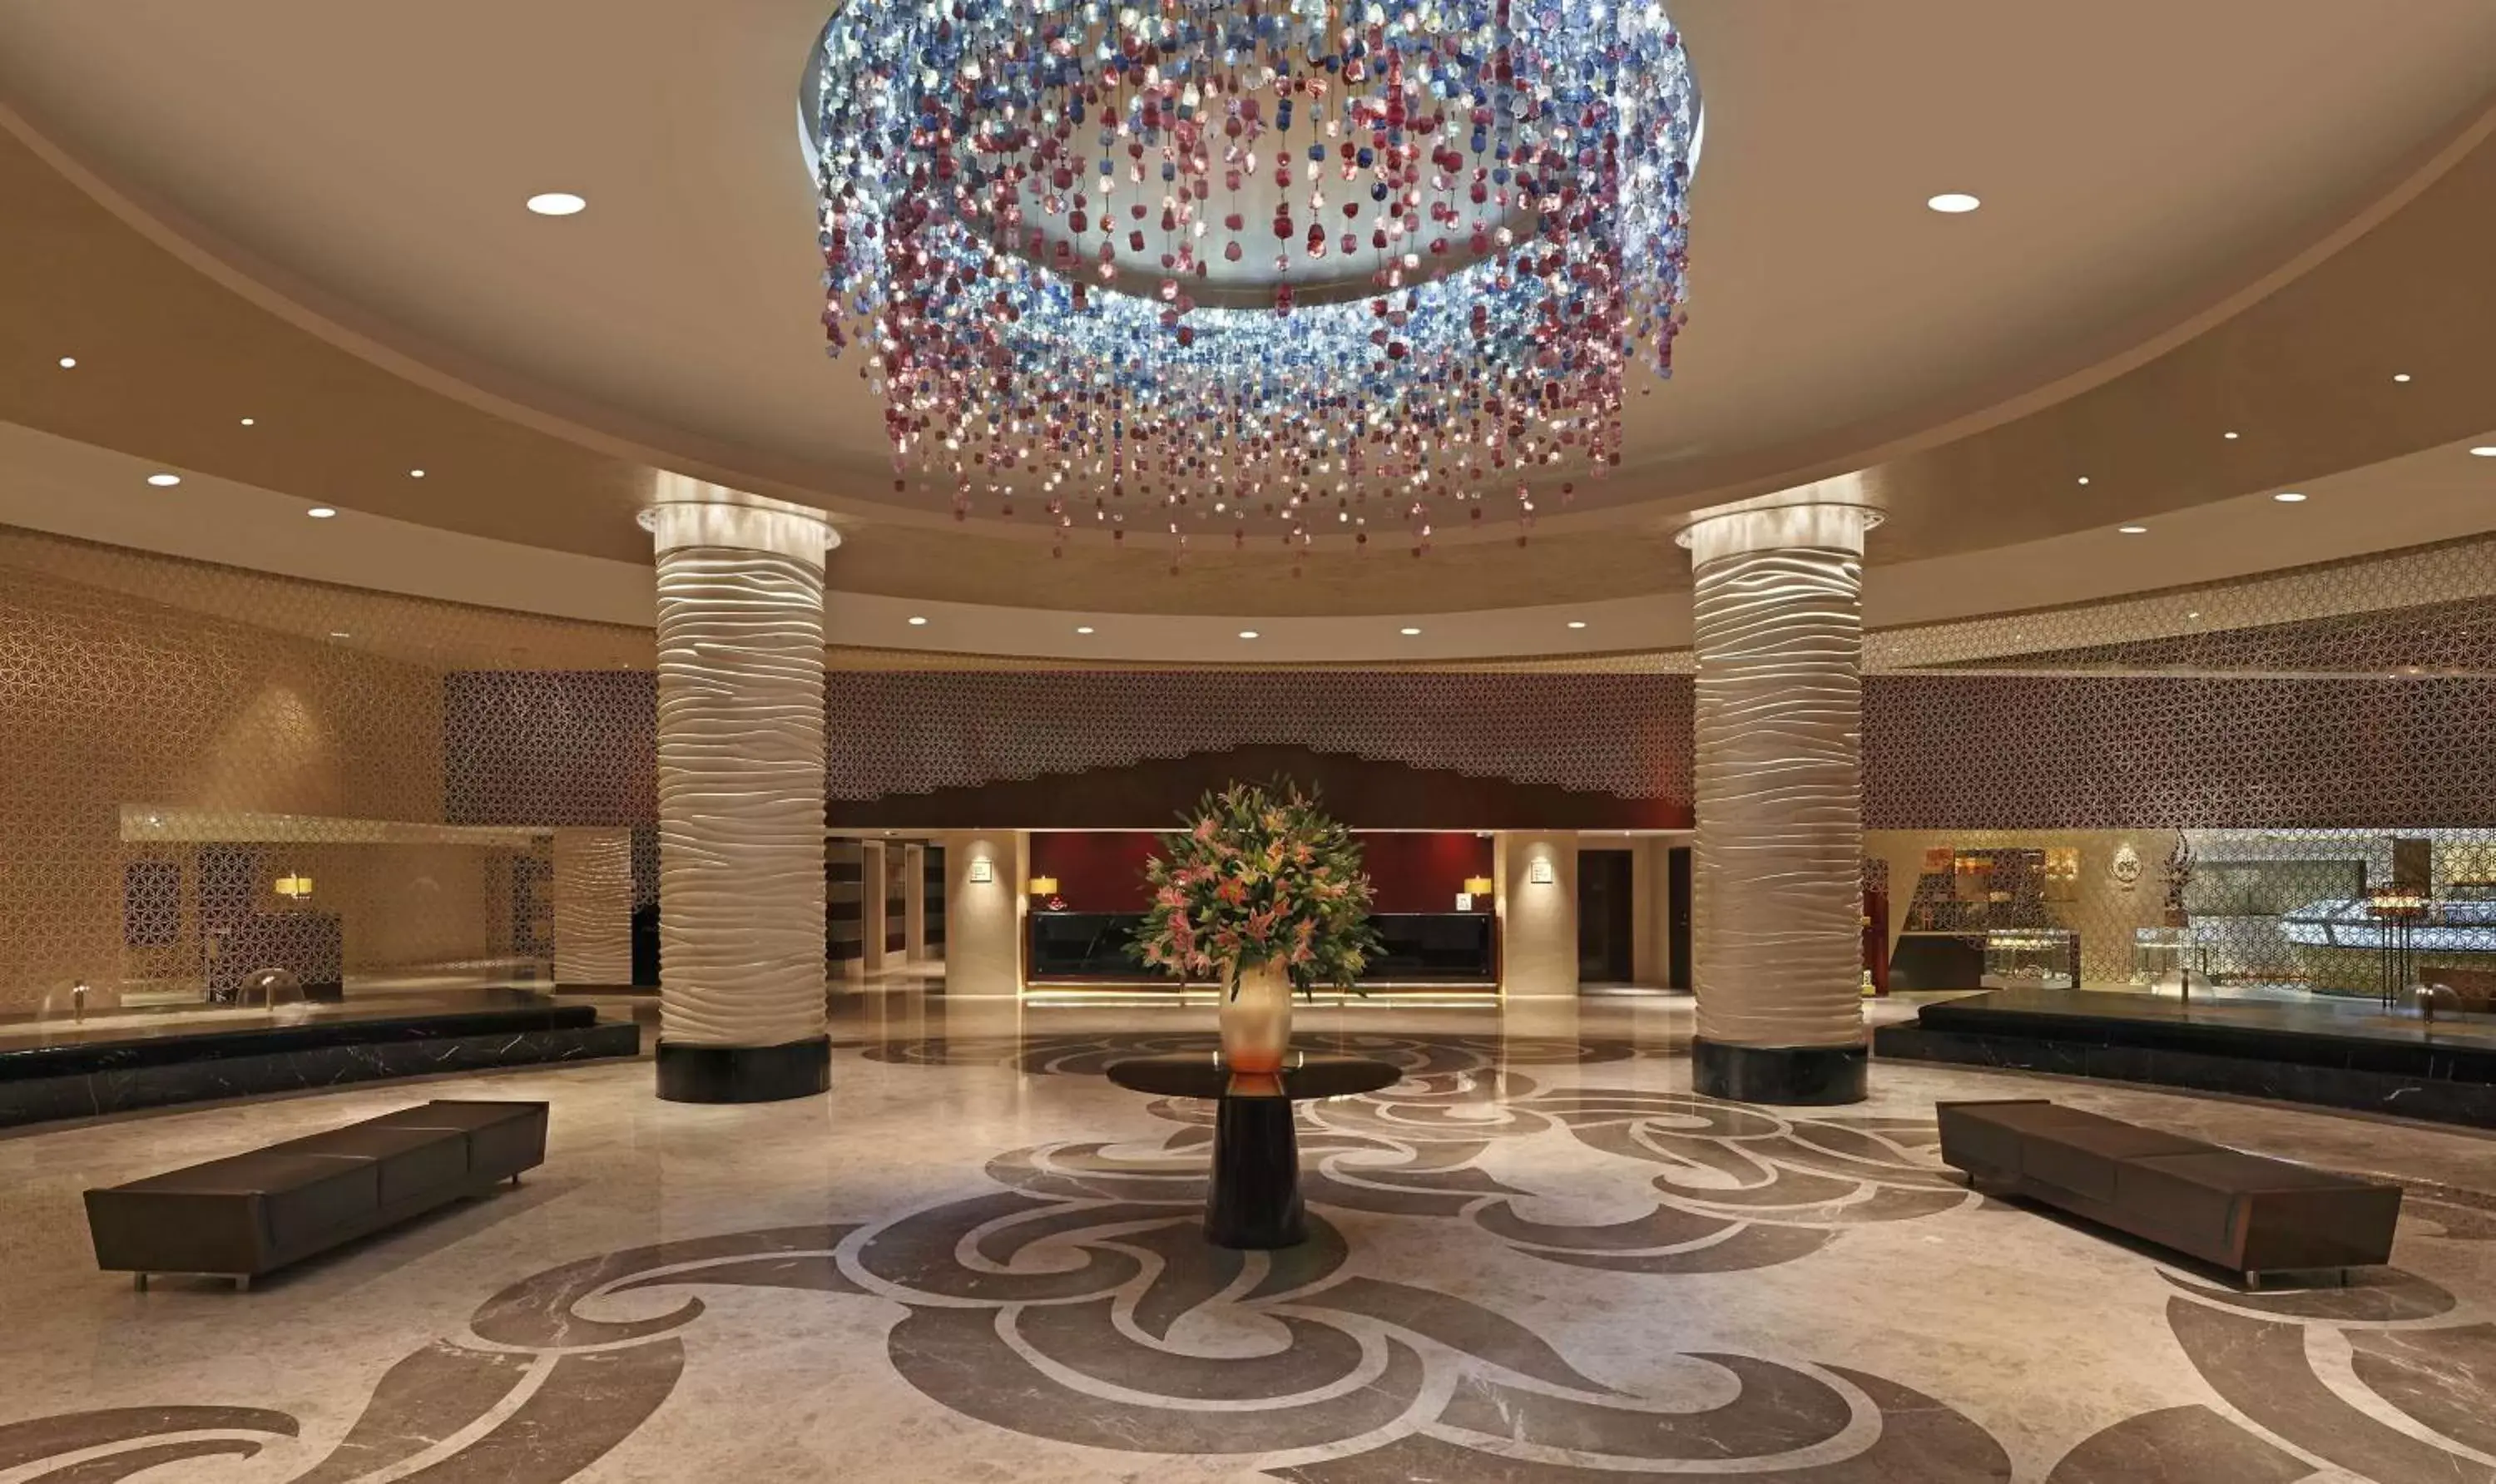 Lobby or reception, Lobby/Reception in Hilton Chennai